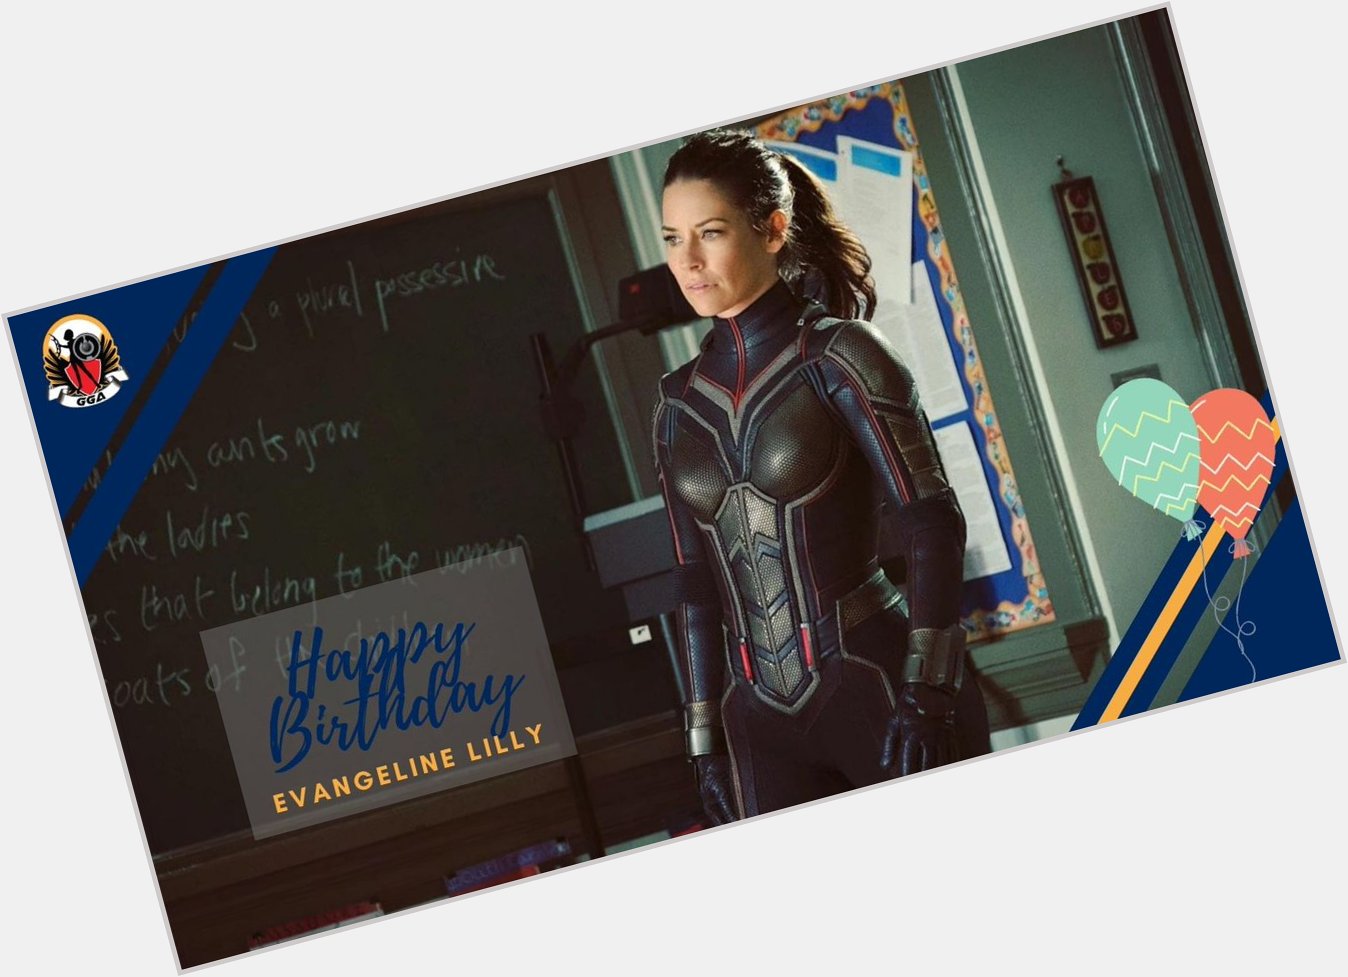 Happy Birthday, Evangeline Lilly, aka Hope van Dyne aka Kate Austen!  